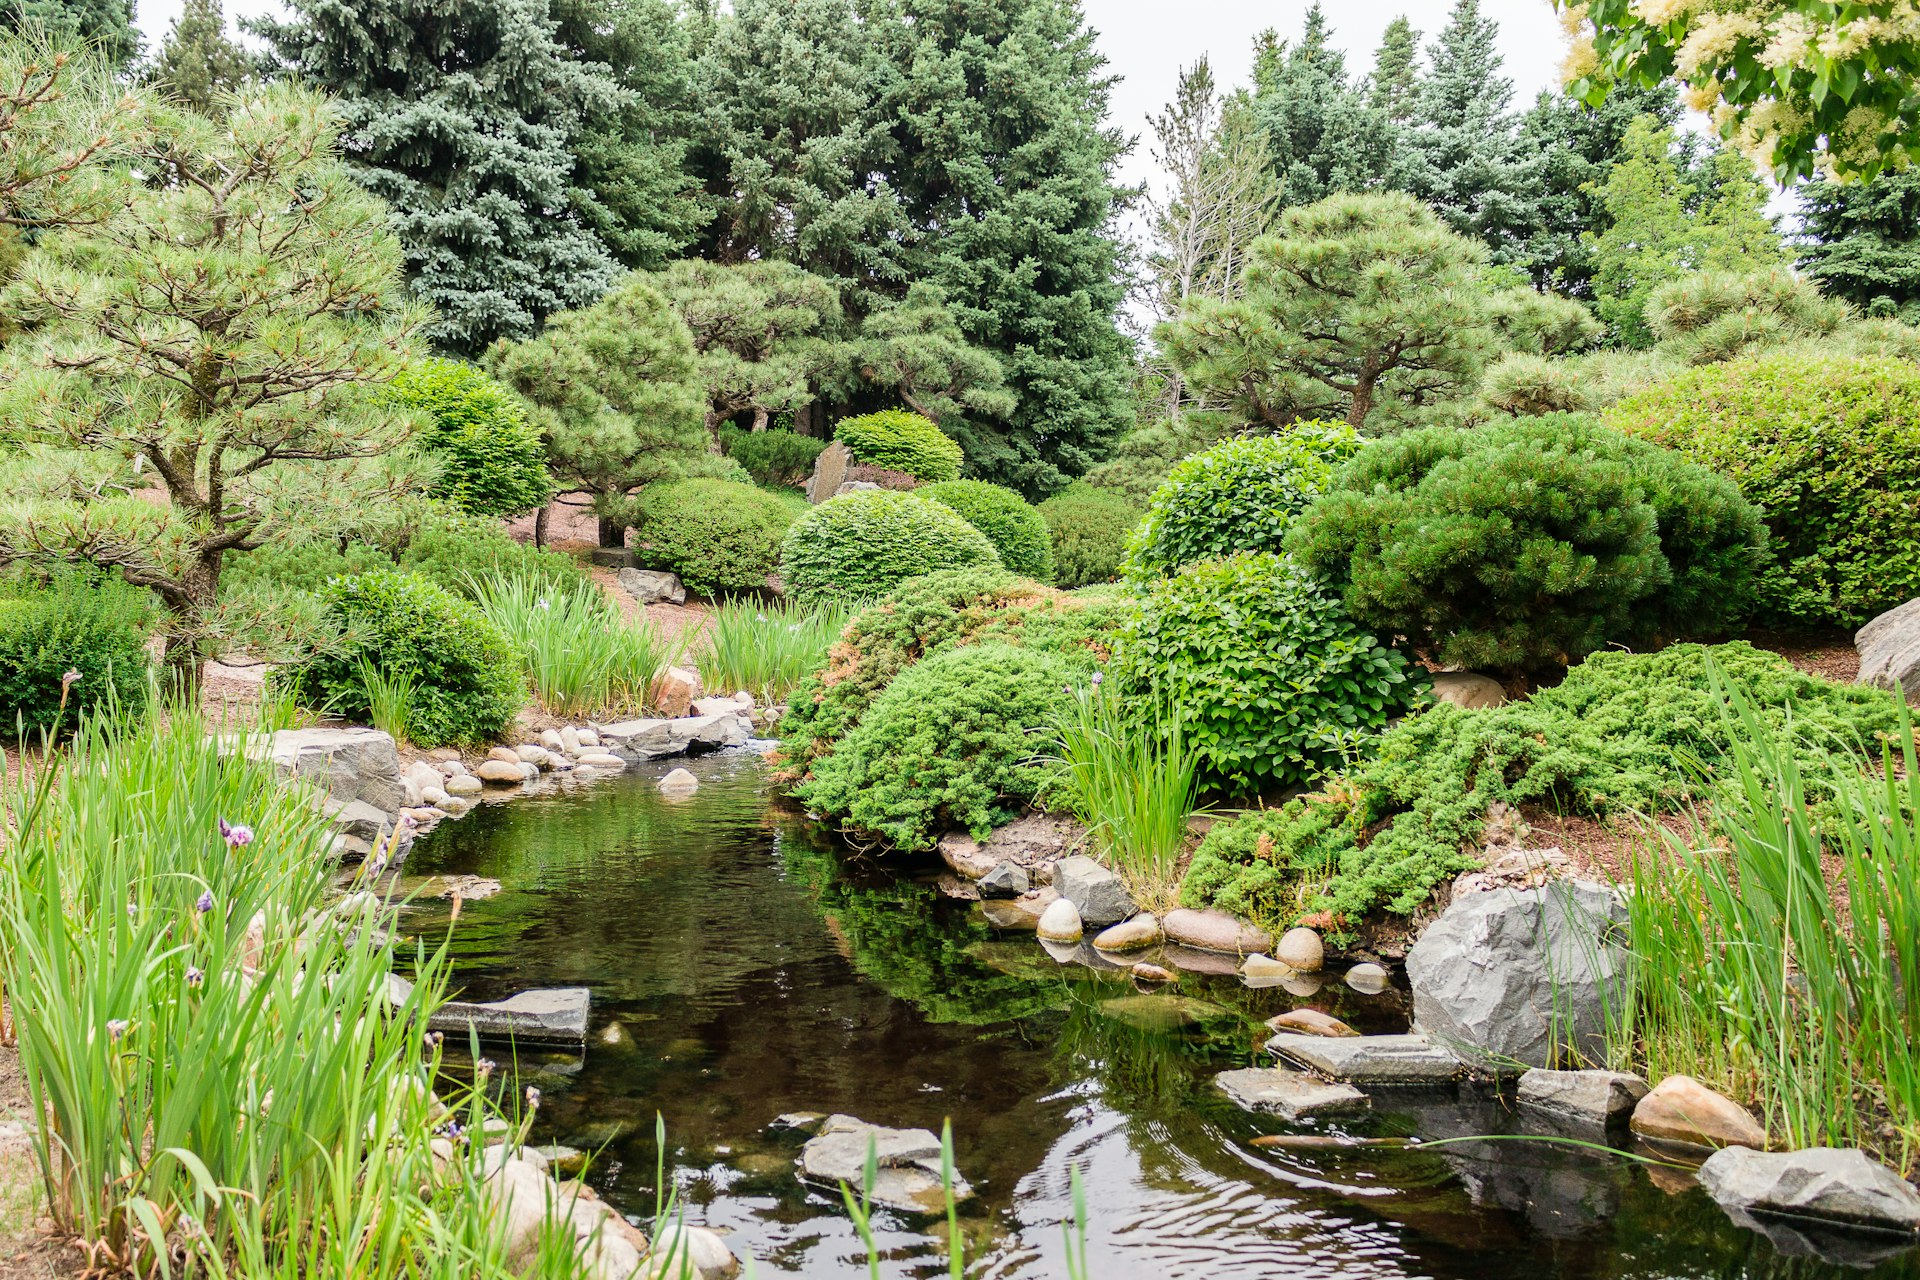 The Japanese Garden at Denver Botanic Gardens.